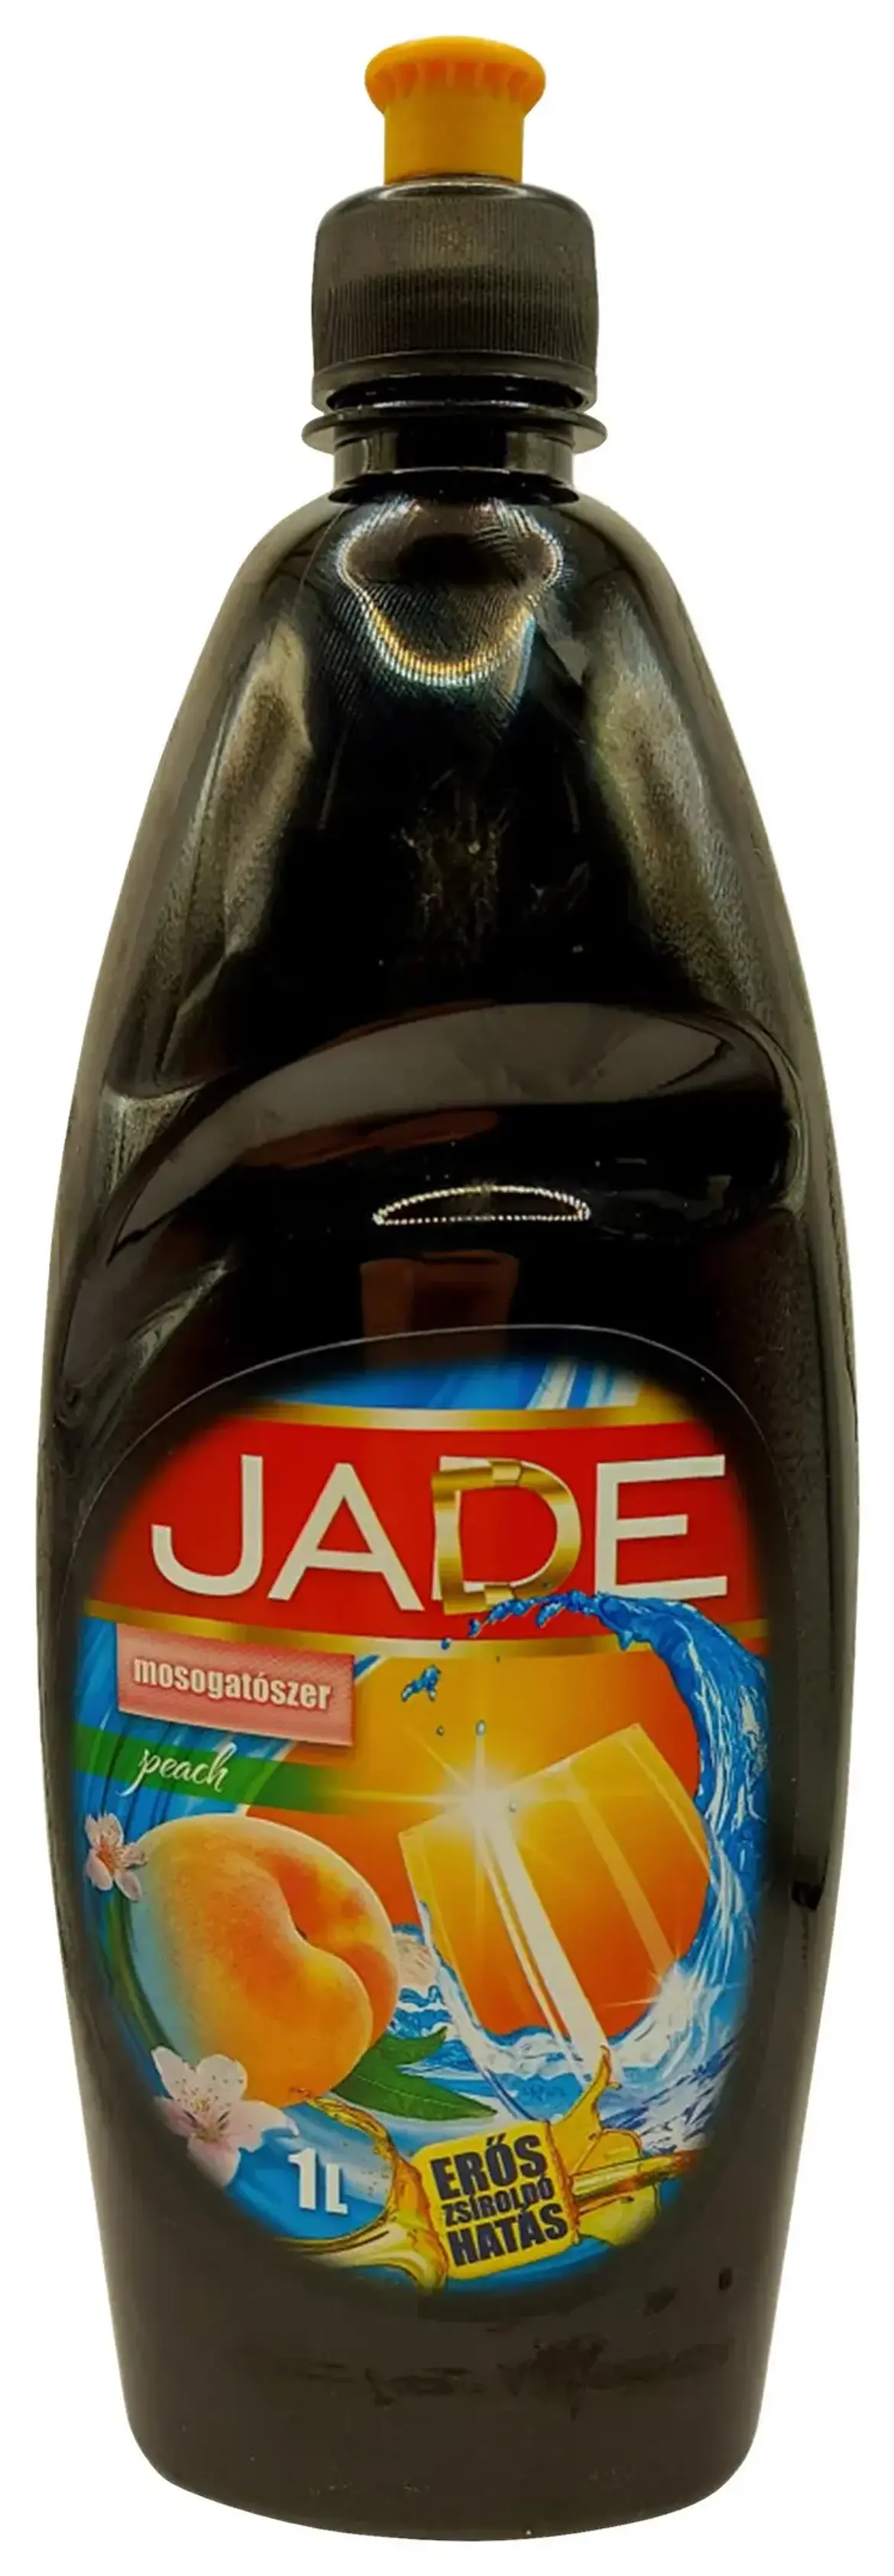 Jade Peach mosogatószer